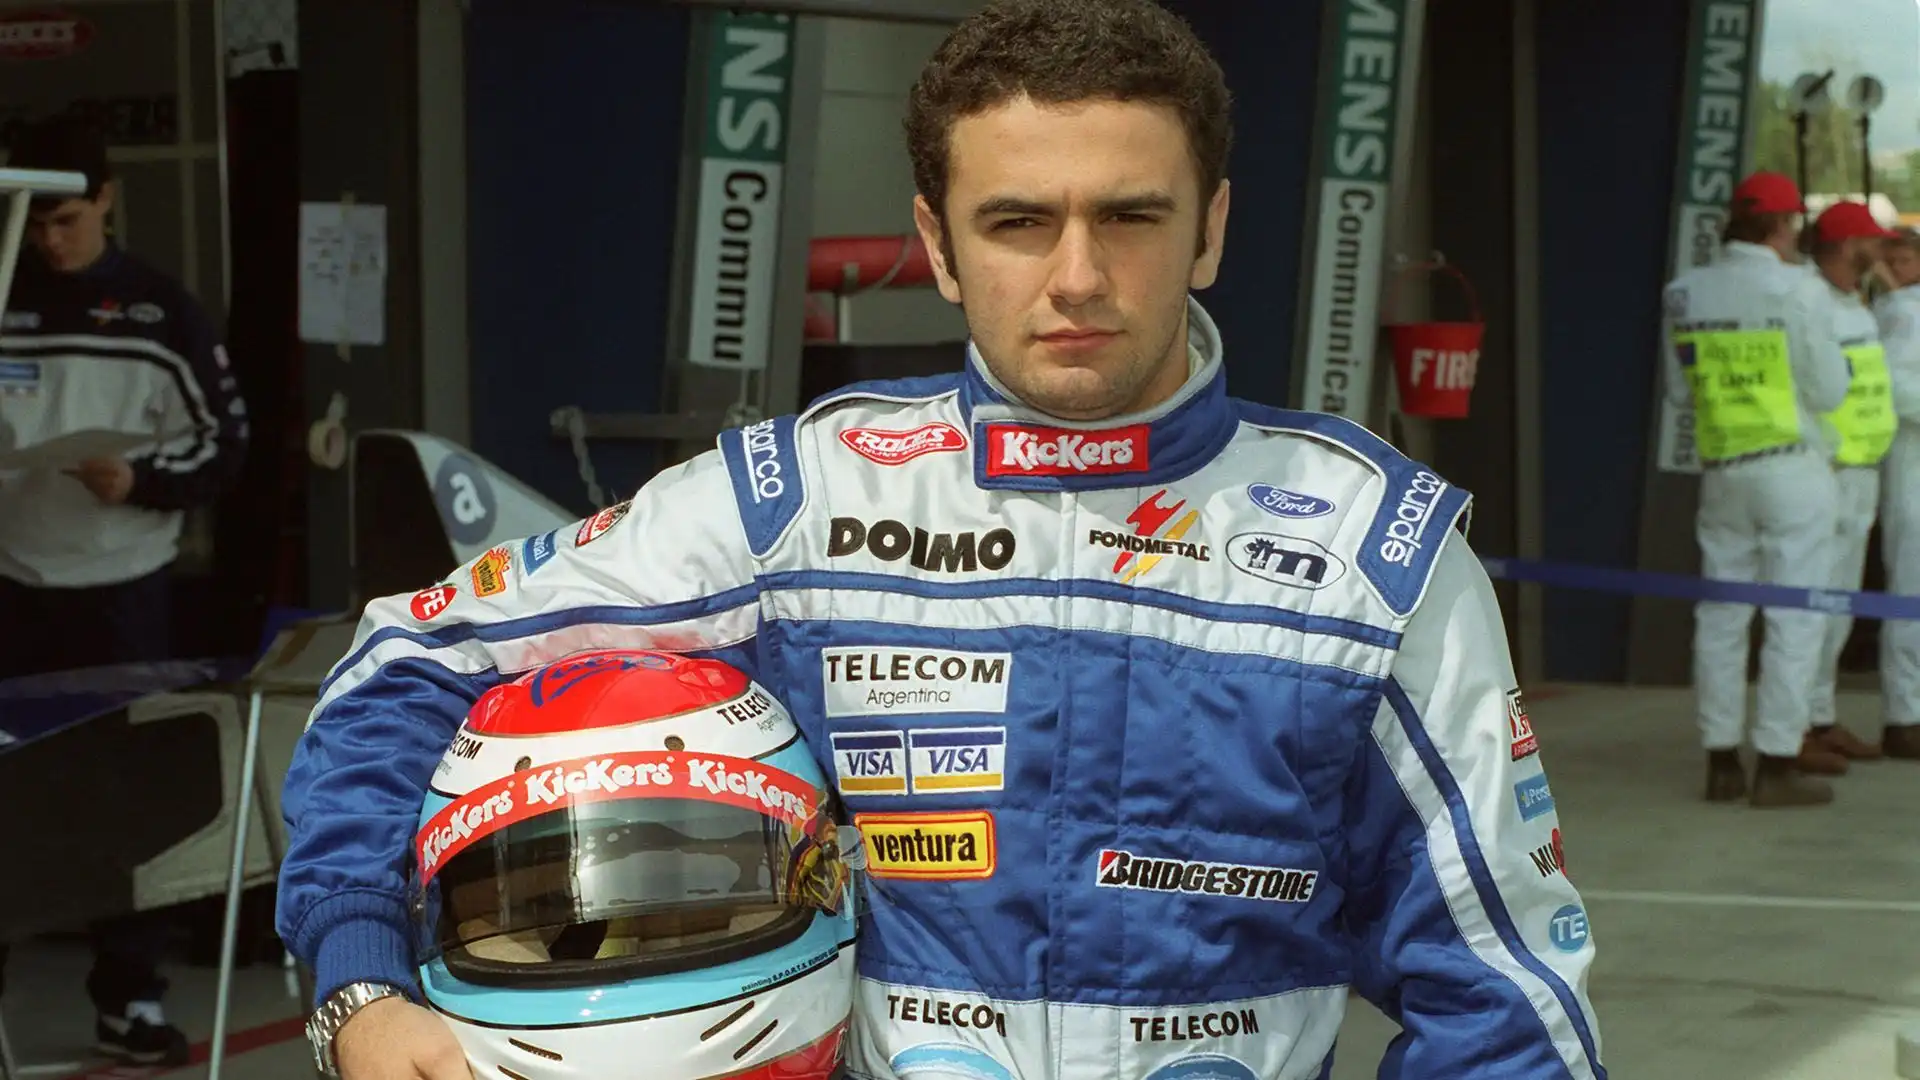 9. Esteban Tuero (19 anni, 10 mesi e 14 giorni): ha esordito nel GP d'Australia 1998